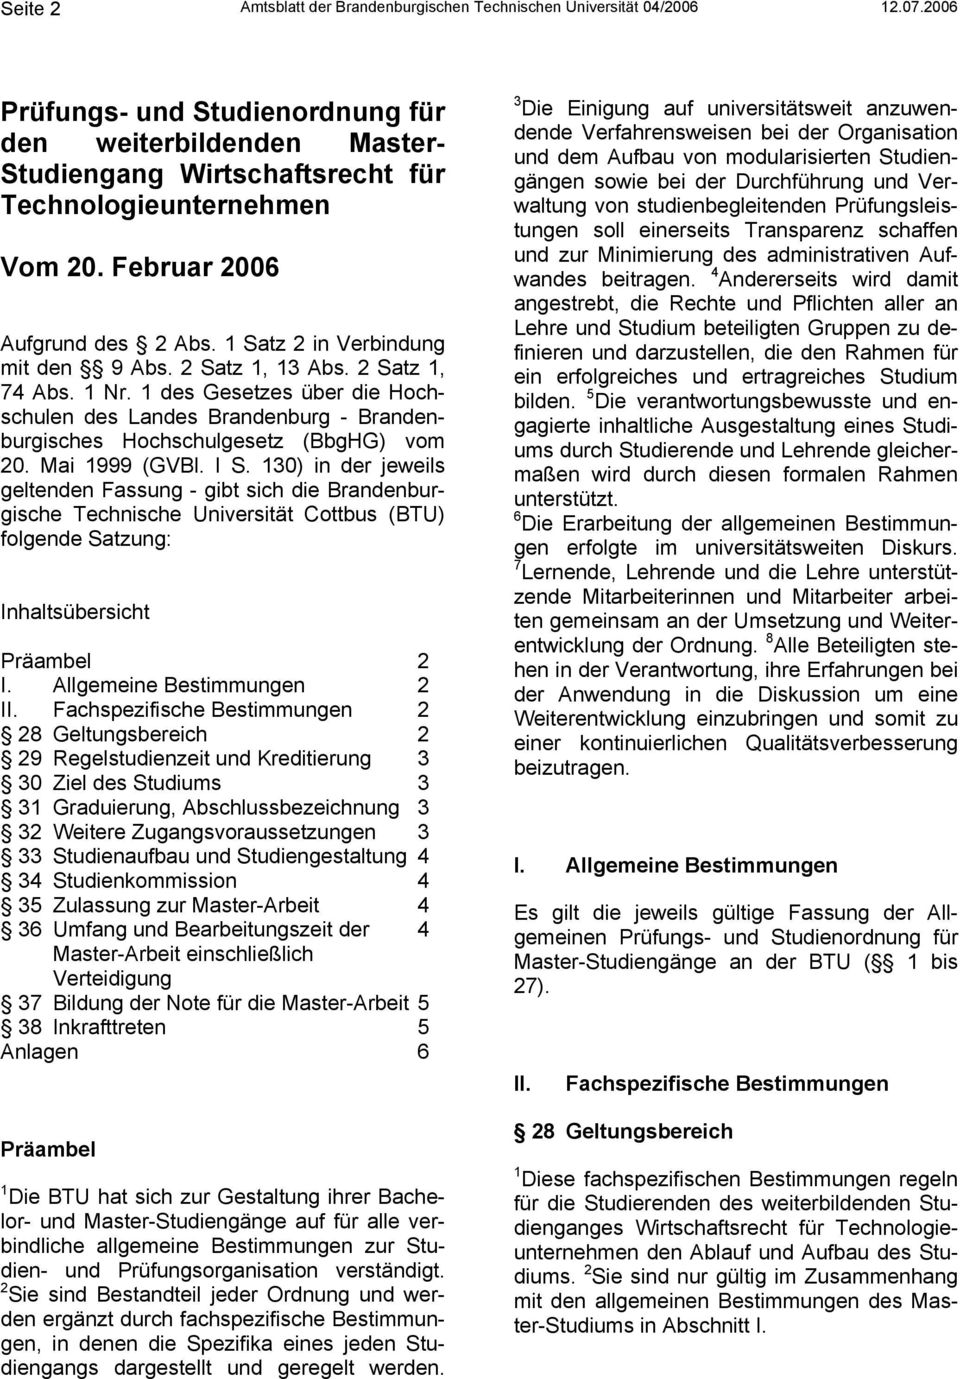 2 Satz 1, 13 Abs. 2 Satz 1, 74 Abs. 1 Nr. 1 des Gesetzes über die Hochschulen des Landes Brandenburg - Brandenburgisches Hochschulgesetz (BbgHG) vom 20. Mai 1999 (GVBl. I S.